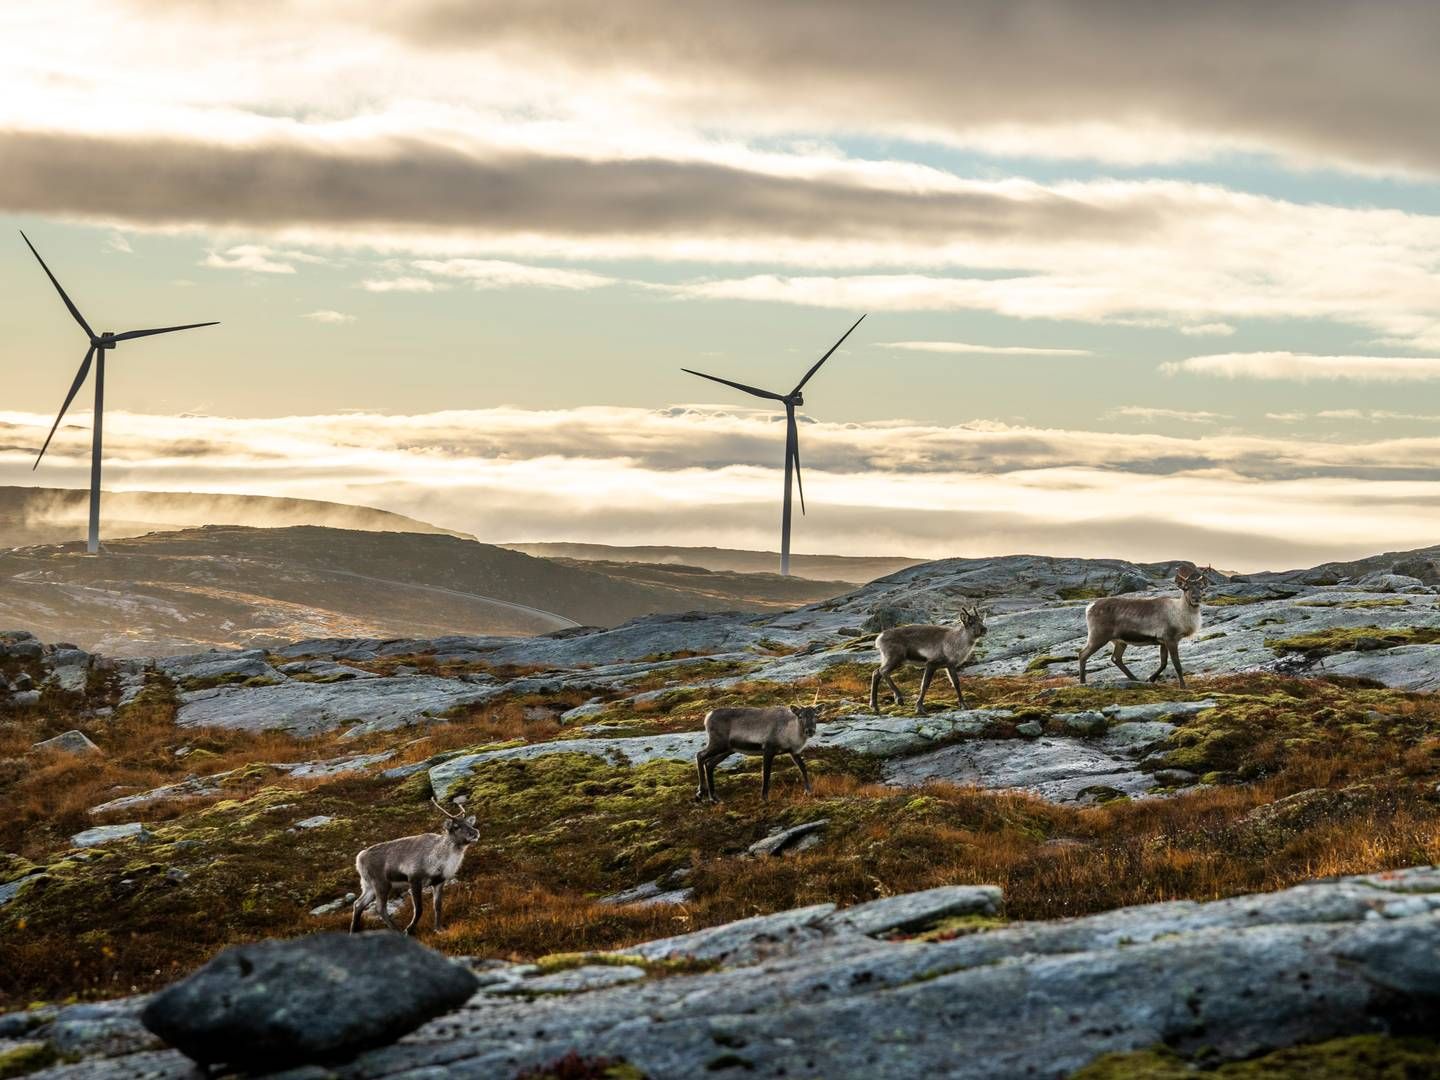 Kraftselskapet Aneo trekker sine planer om utbygging av vindkraft på Fosen av hensyn til reindriftsnæringen. Illustrasjonsbilde fra Storheia vindpark, som er den største av vindparkene i porteføljen til Fosen Vind. Da den ble overført til ordinær drift i februar 2020 var den Norges største med 80 turbiner og en installert effekt på 288 MW. | Foto: Heiko Junge / NTB